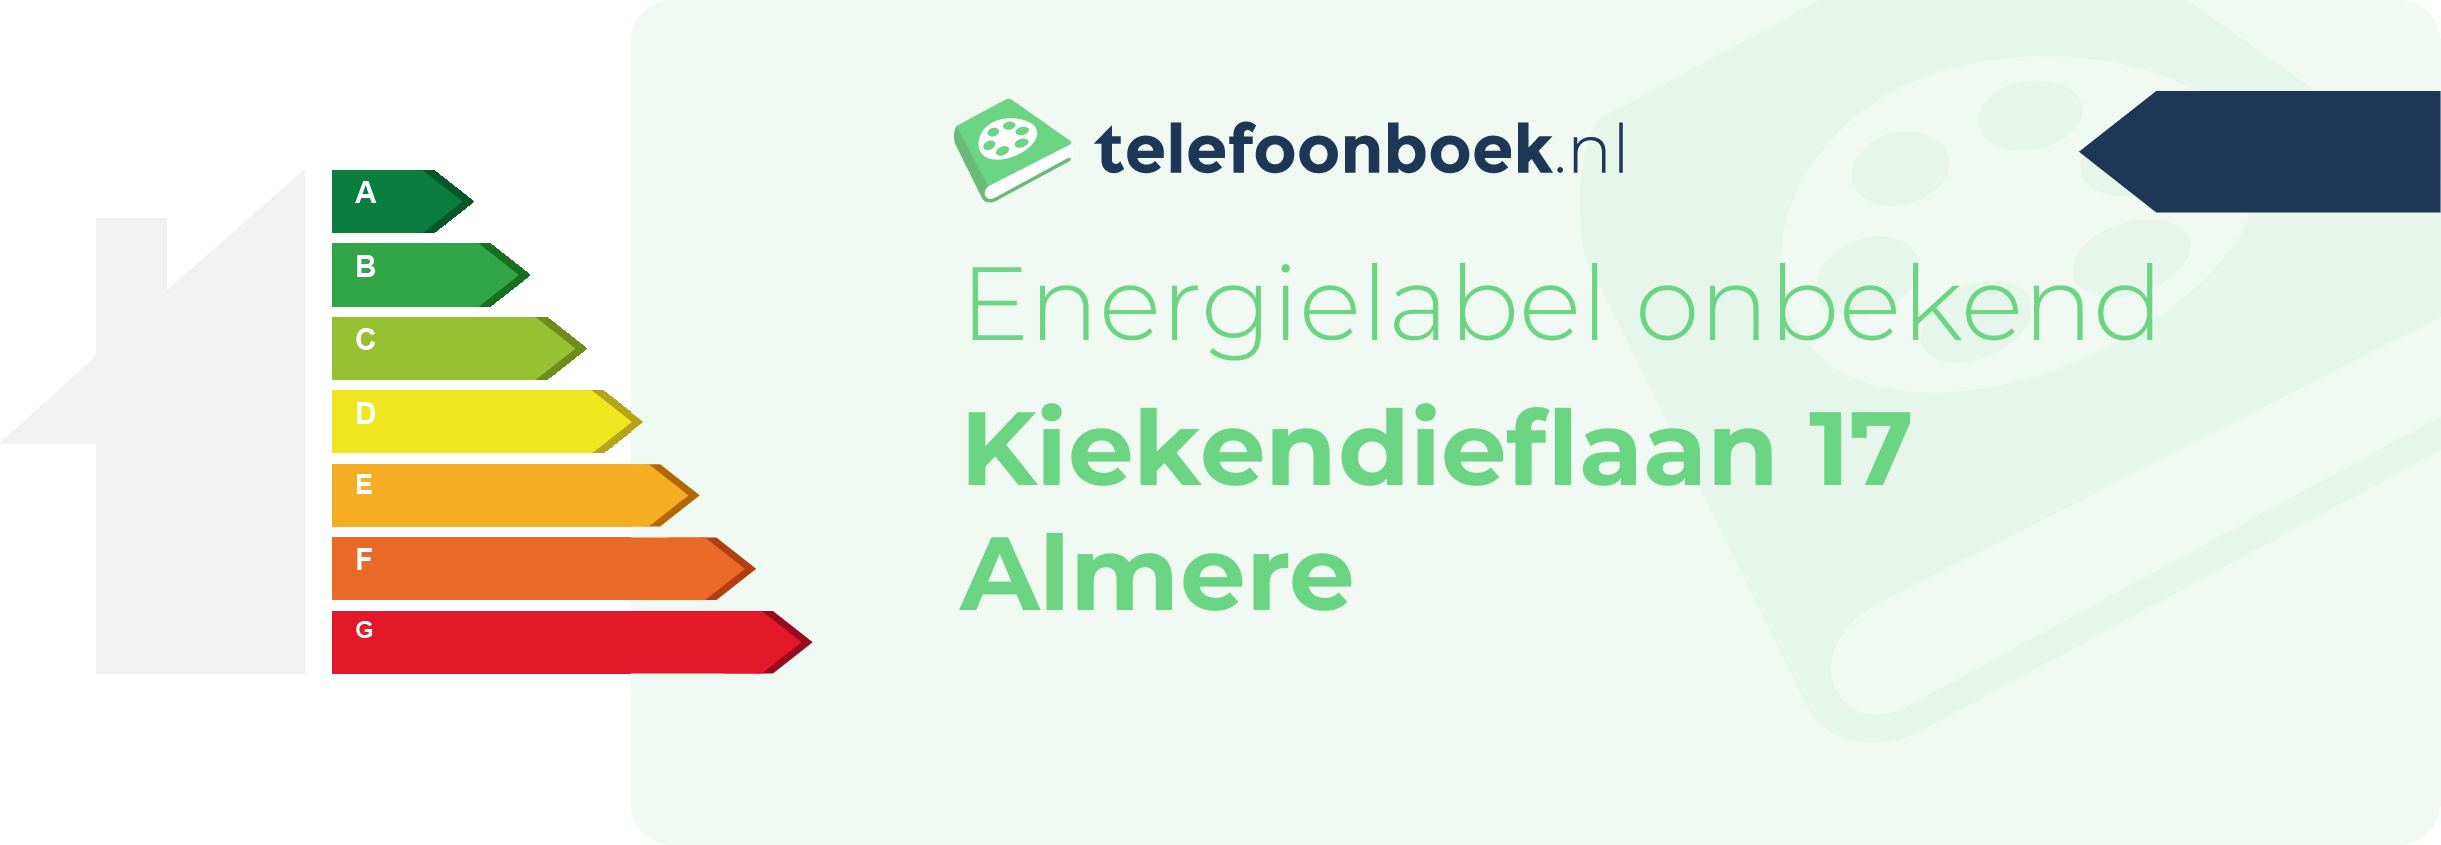 Energielabel Kiekendieflaan 17 Almere